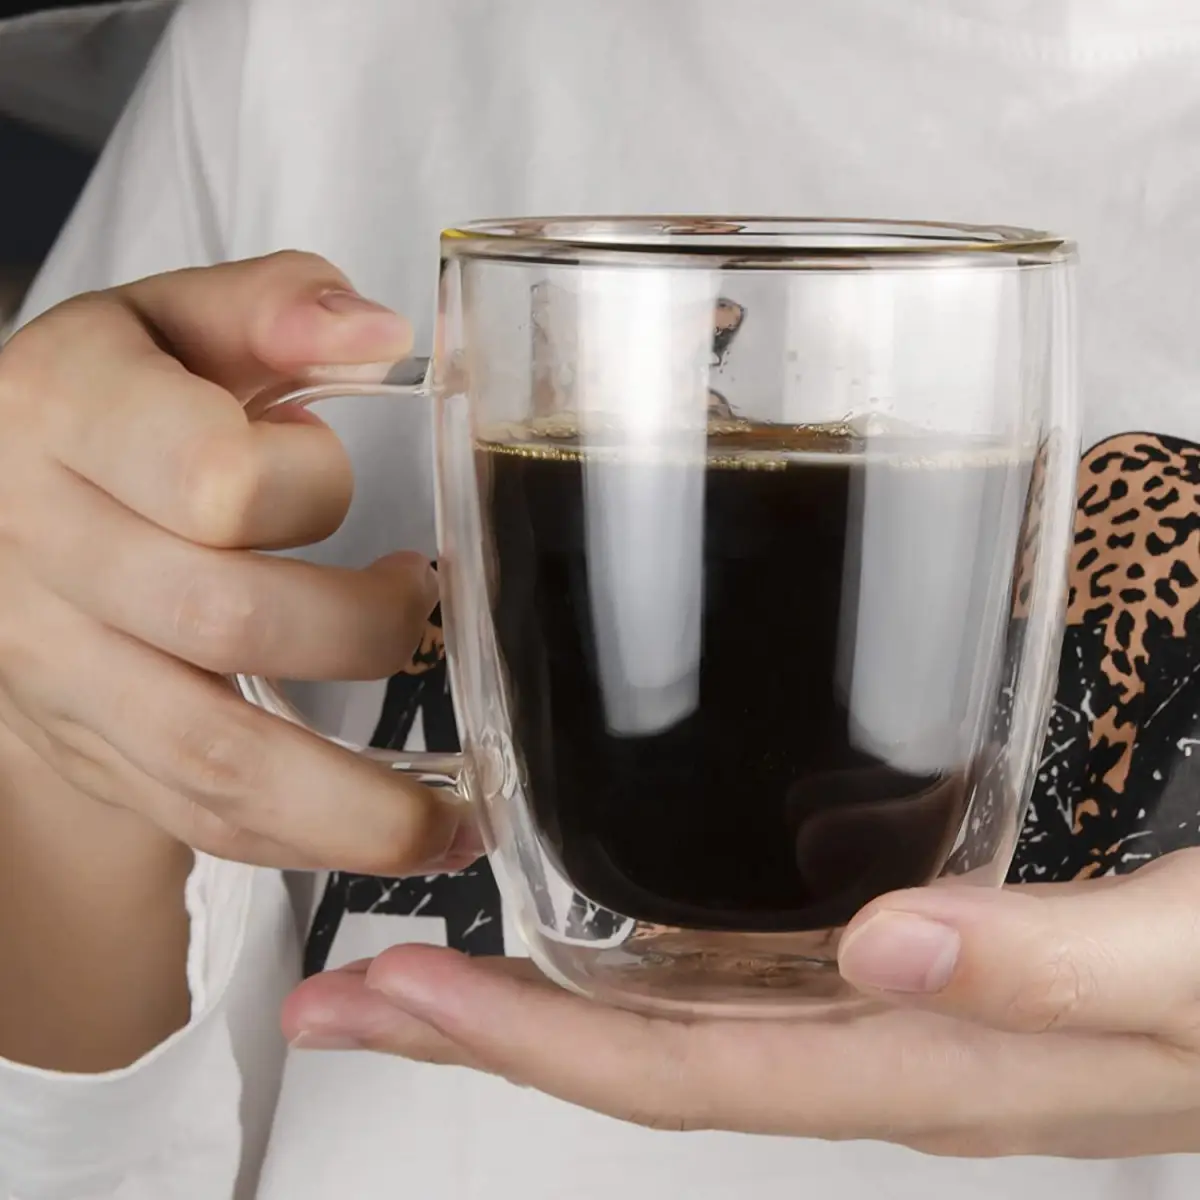 warum ist frisch gemahlener kaffee besser guten kaffee richitg zubereiten frau haelt glastasse mit doppelwand voll schwarzer kaffee